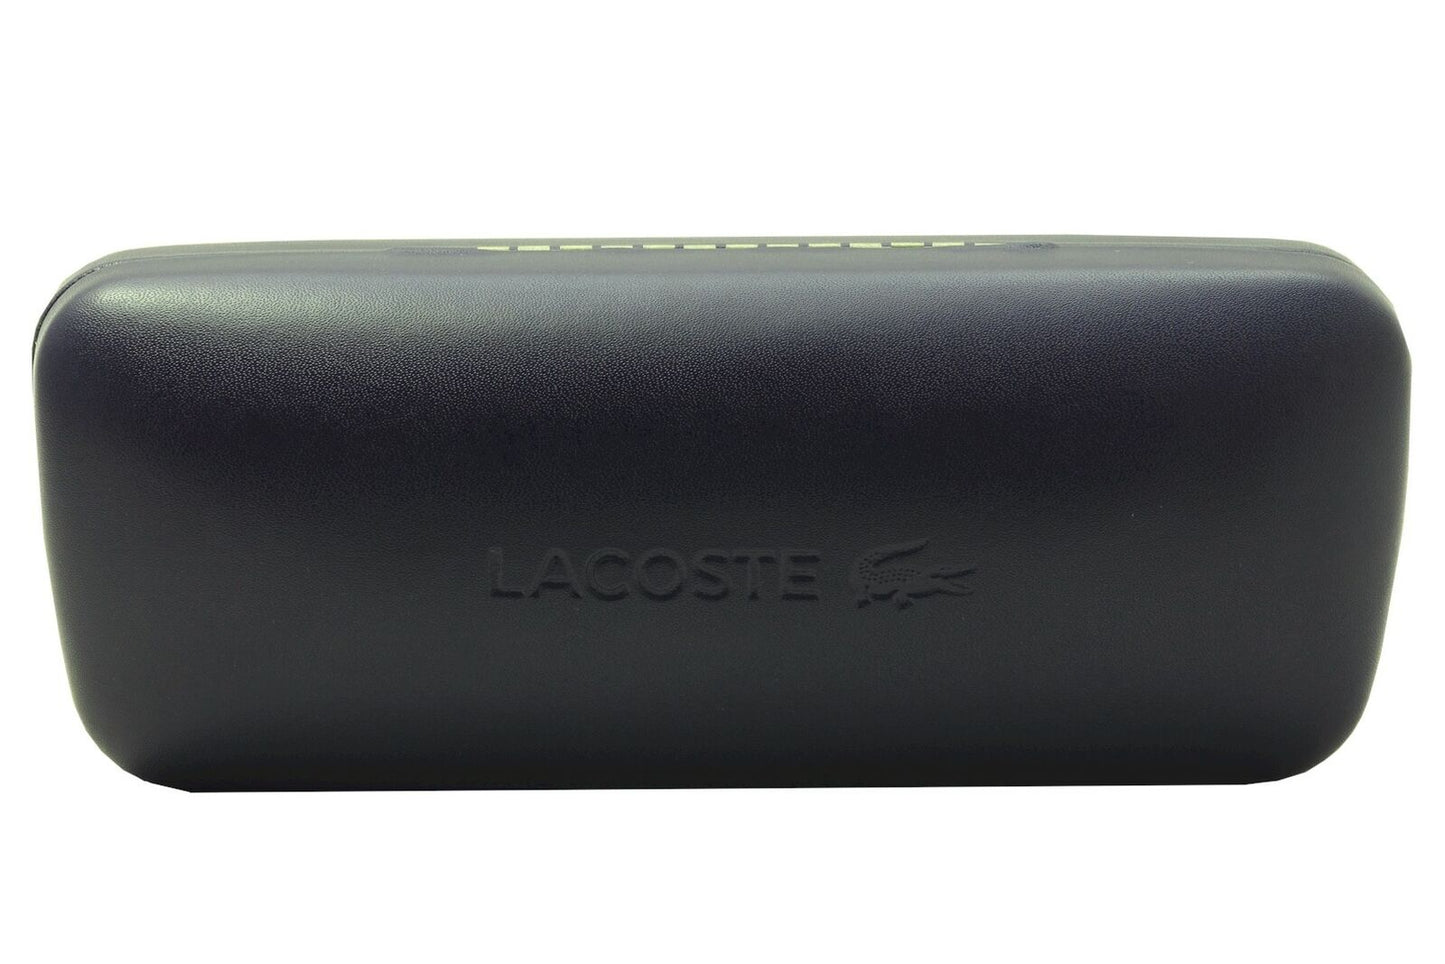 Lacoste L978S-400 52mm New Sunglasses